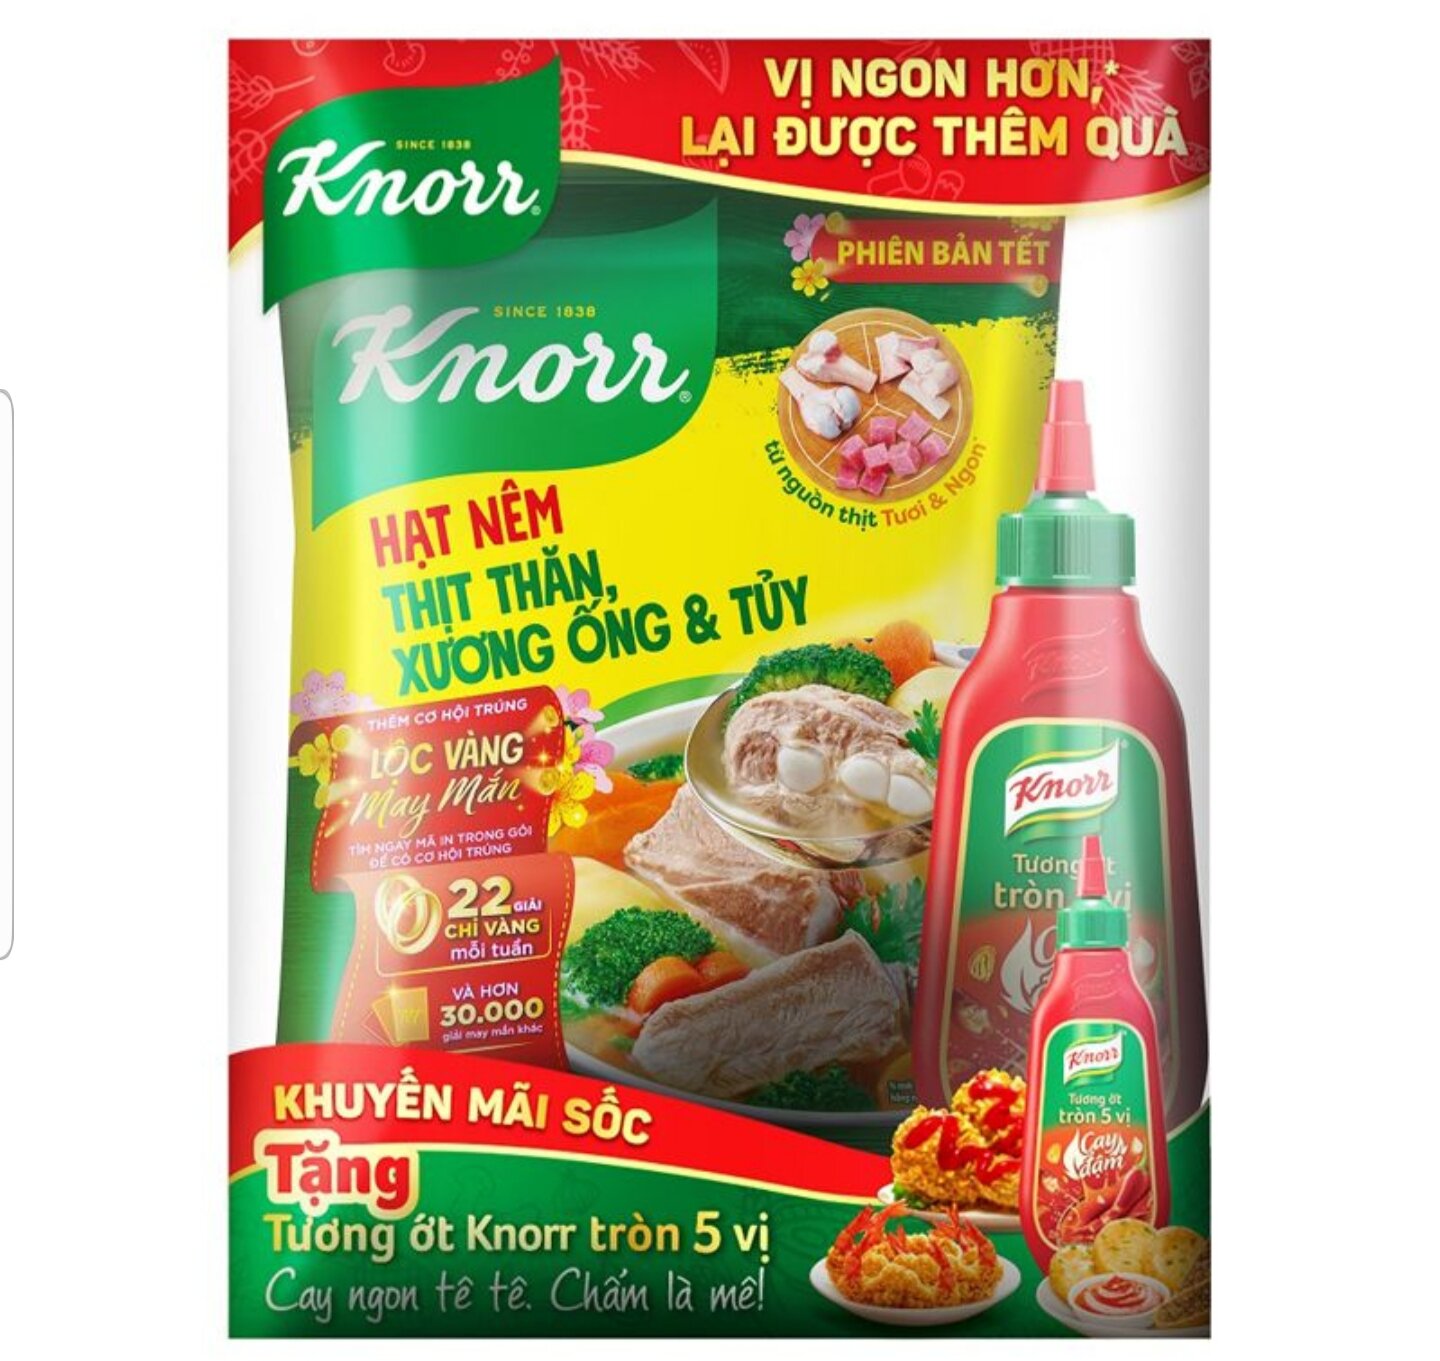 Set Quà Tết Hạt Nêm Knorr 900G Tặng Tương Ớt Knorr Cay Đậm